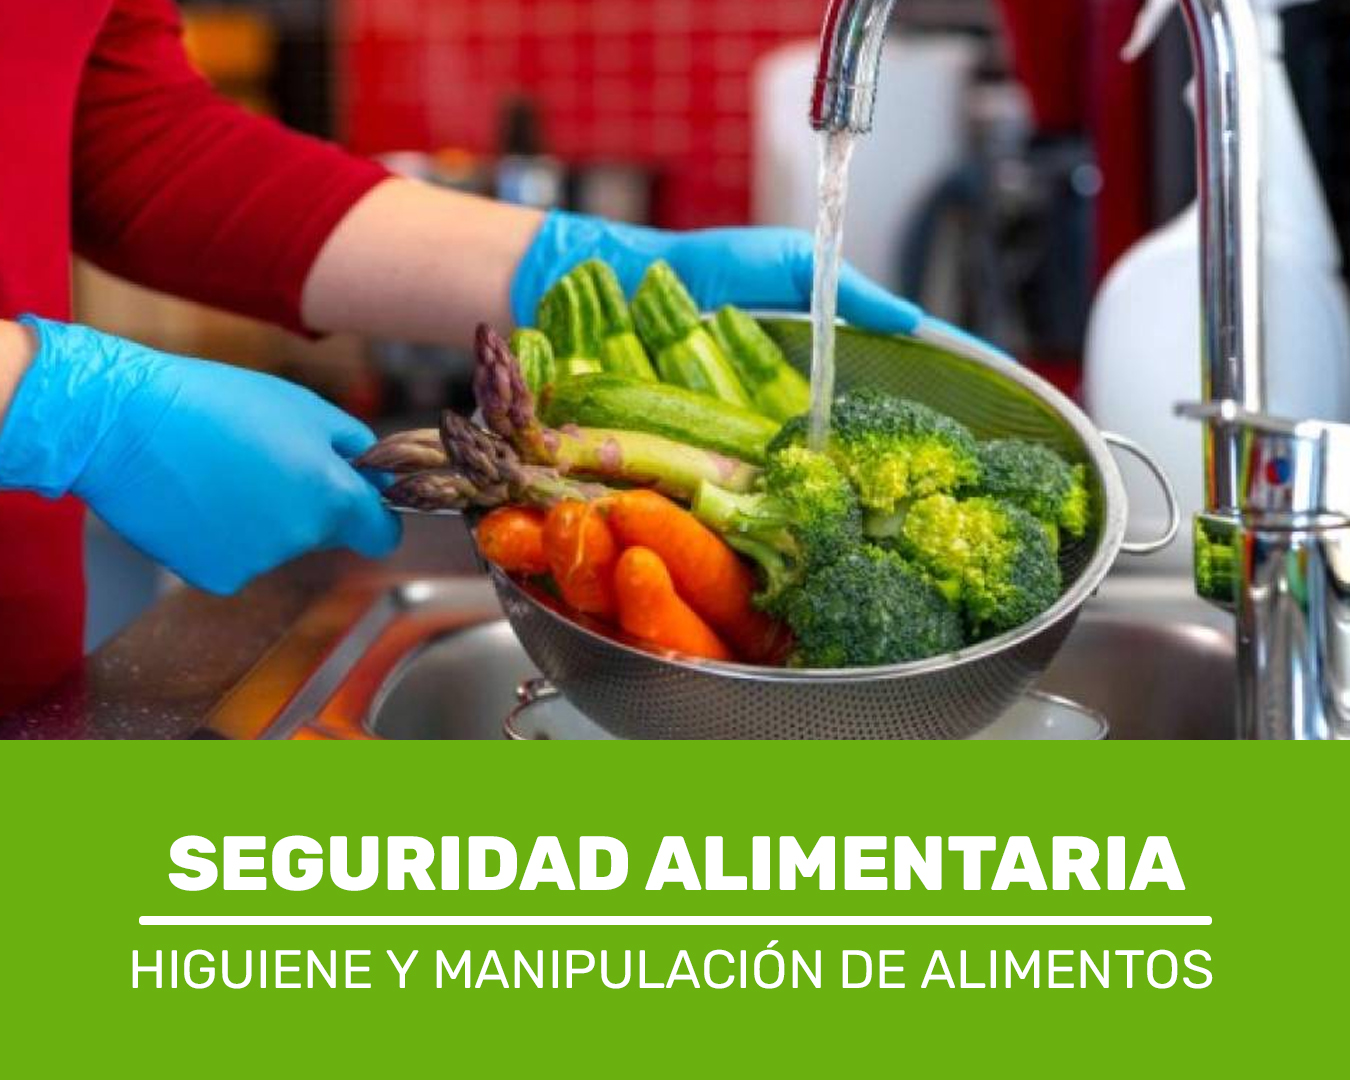 Higiene y Manipulación de Alimentos – Seguridad Alimentaria